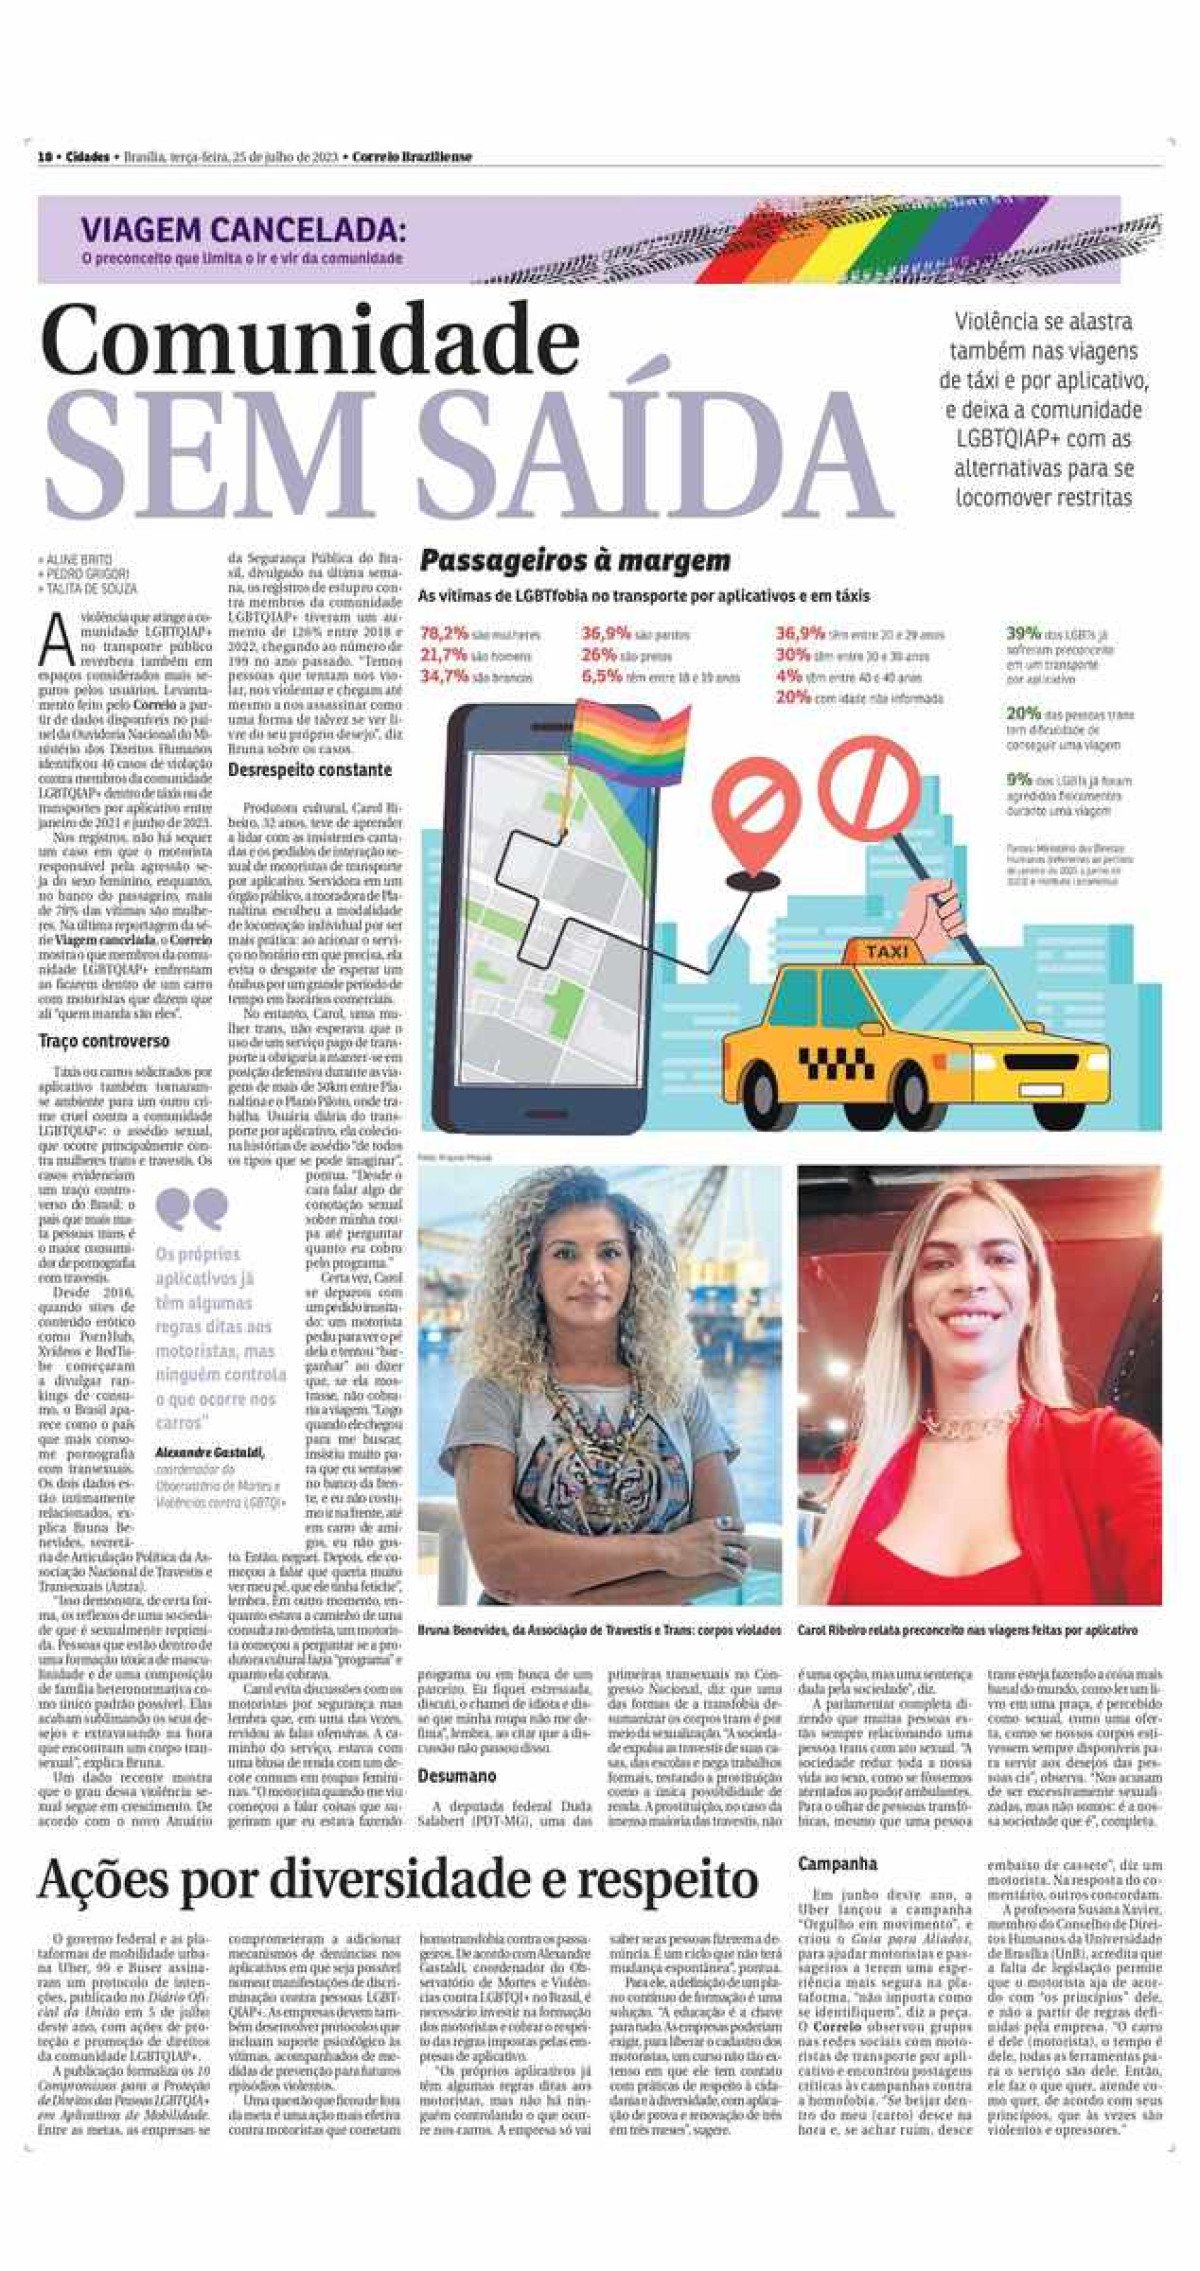 Série de reportagens do Correio Braziliense mostra como a LGBTFobia ocorre no transporte público e por carros de aplicativo.